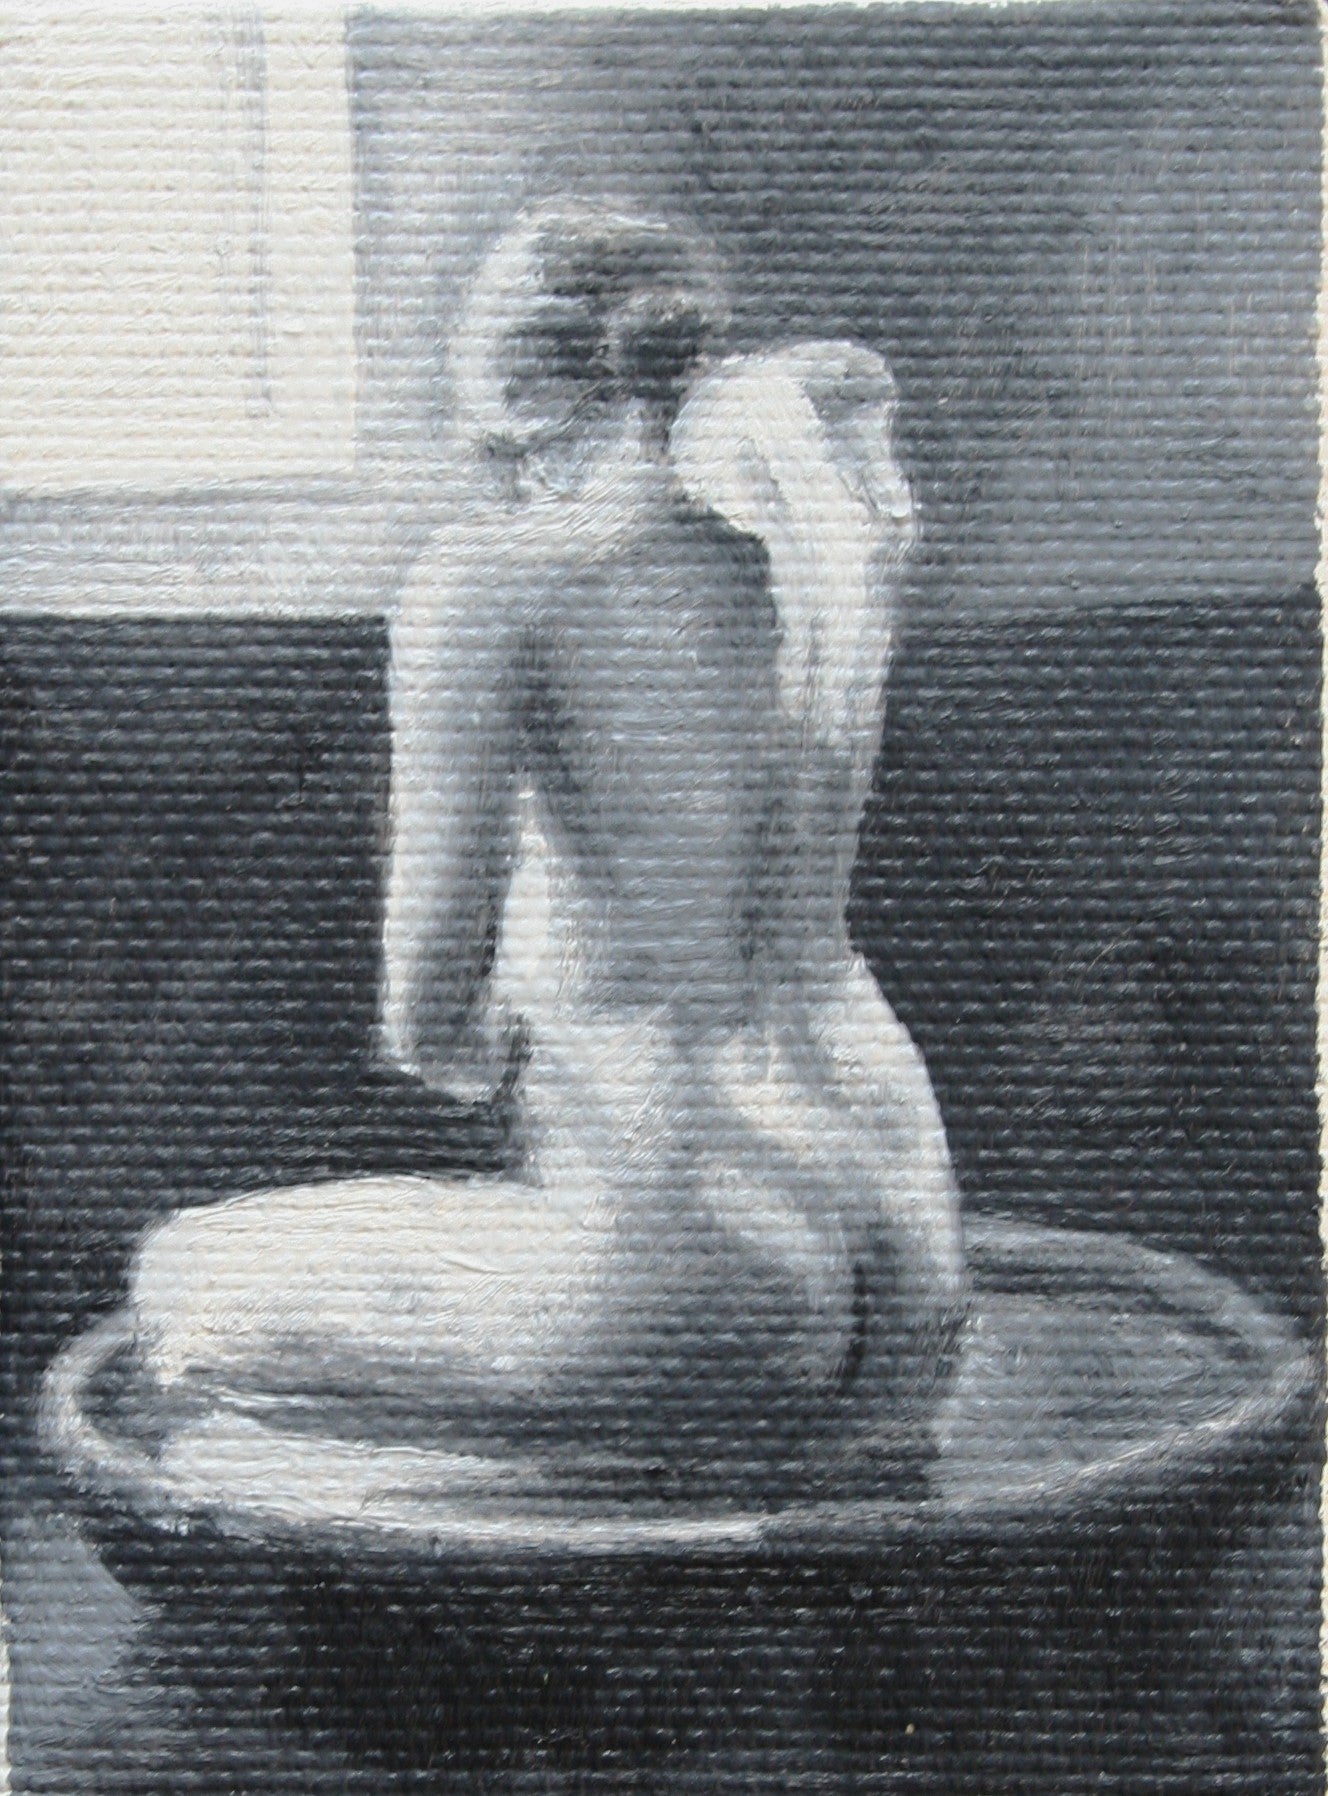 Woman Washing in Tub (2009)